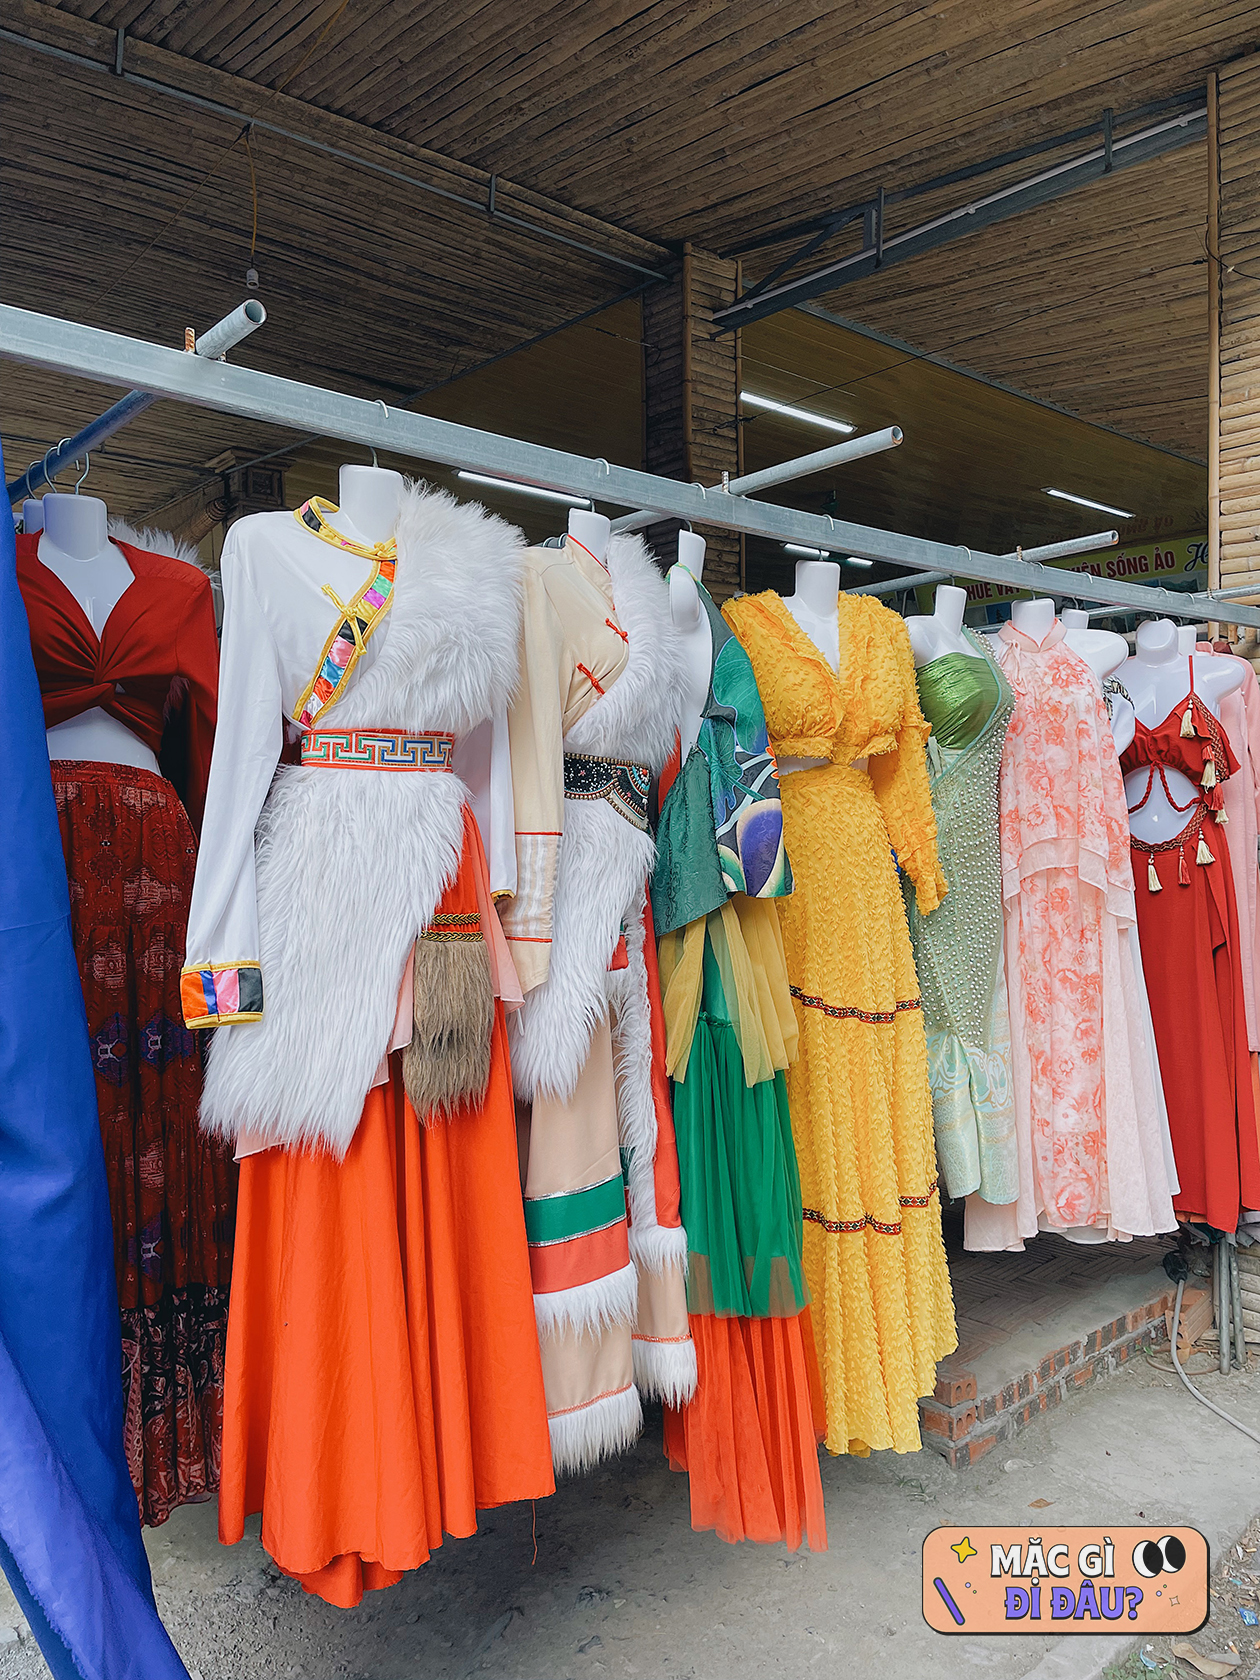 Không còn nhận ra Ninh Bình khi xuất hiện hàng loạt bộ trang phục Thái Lan, Mông Cổ của du khách đến check-in- Ảnh 8.